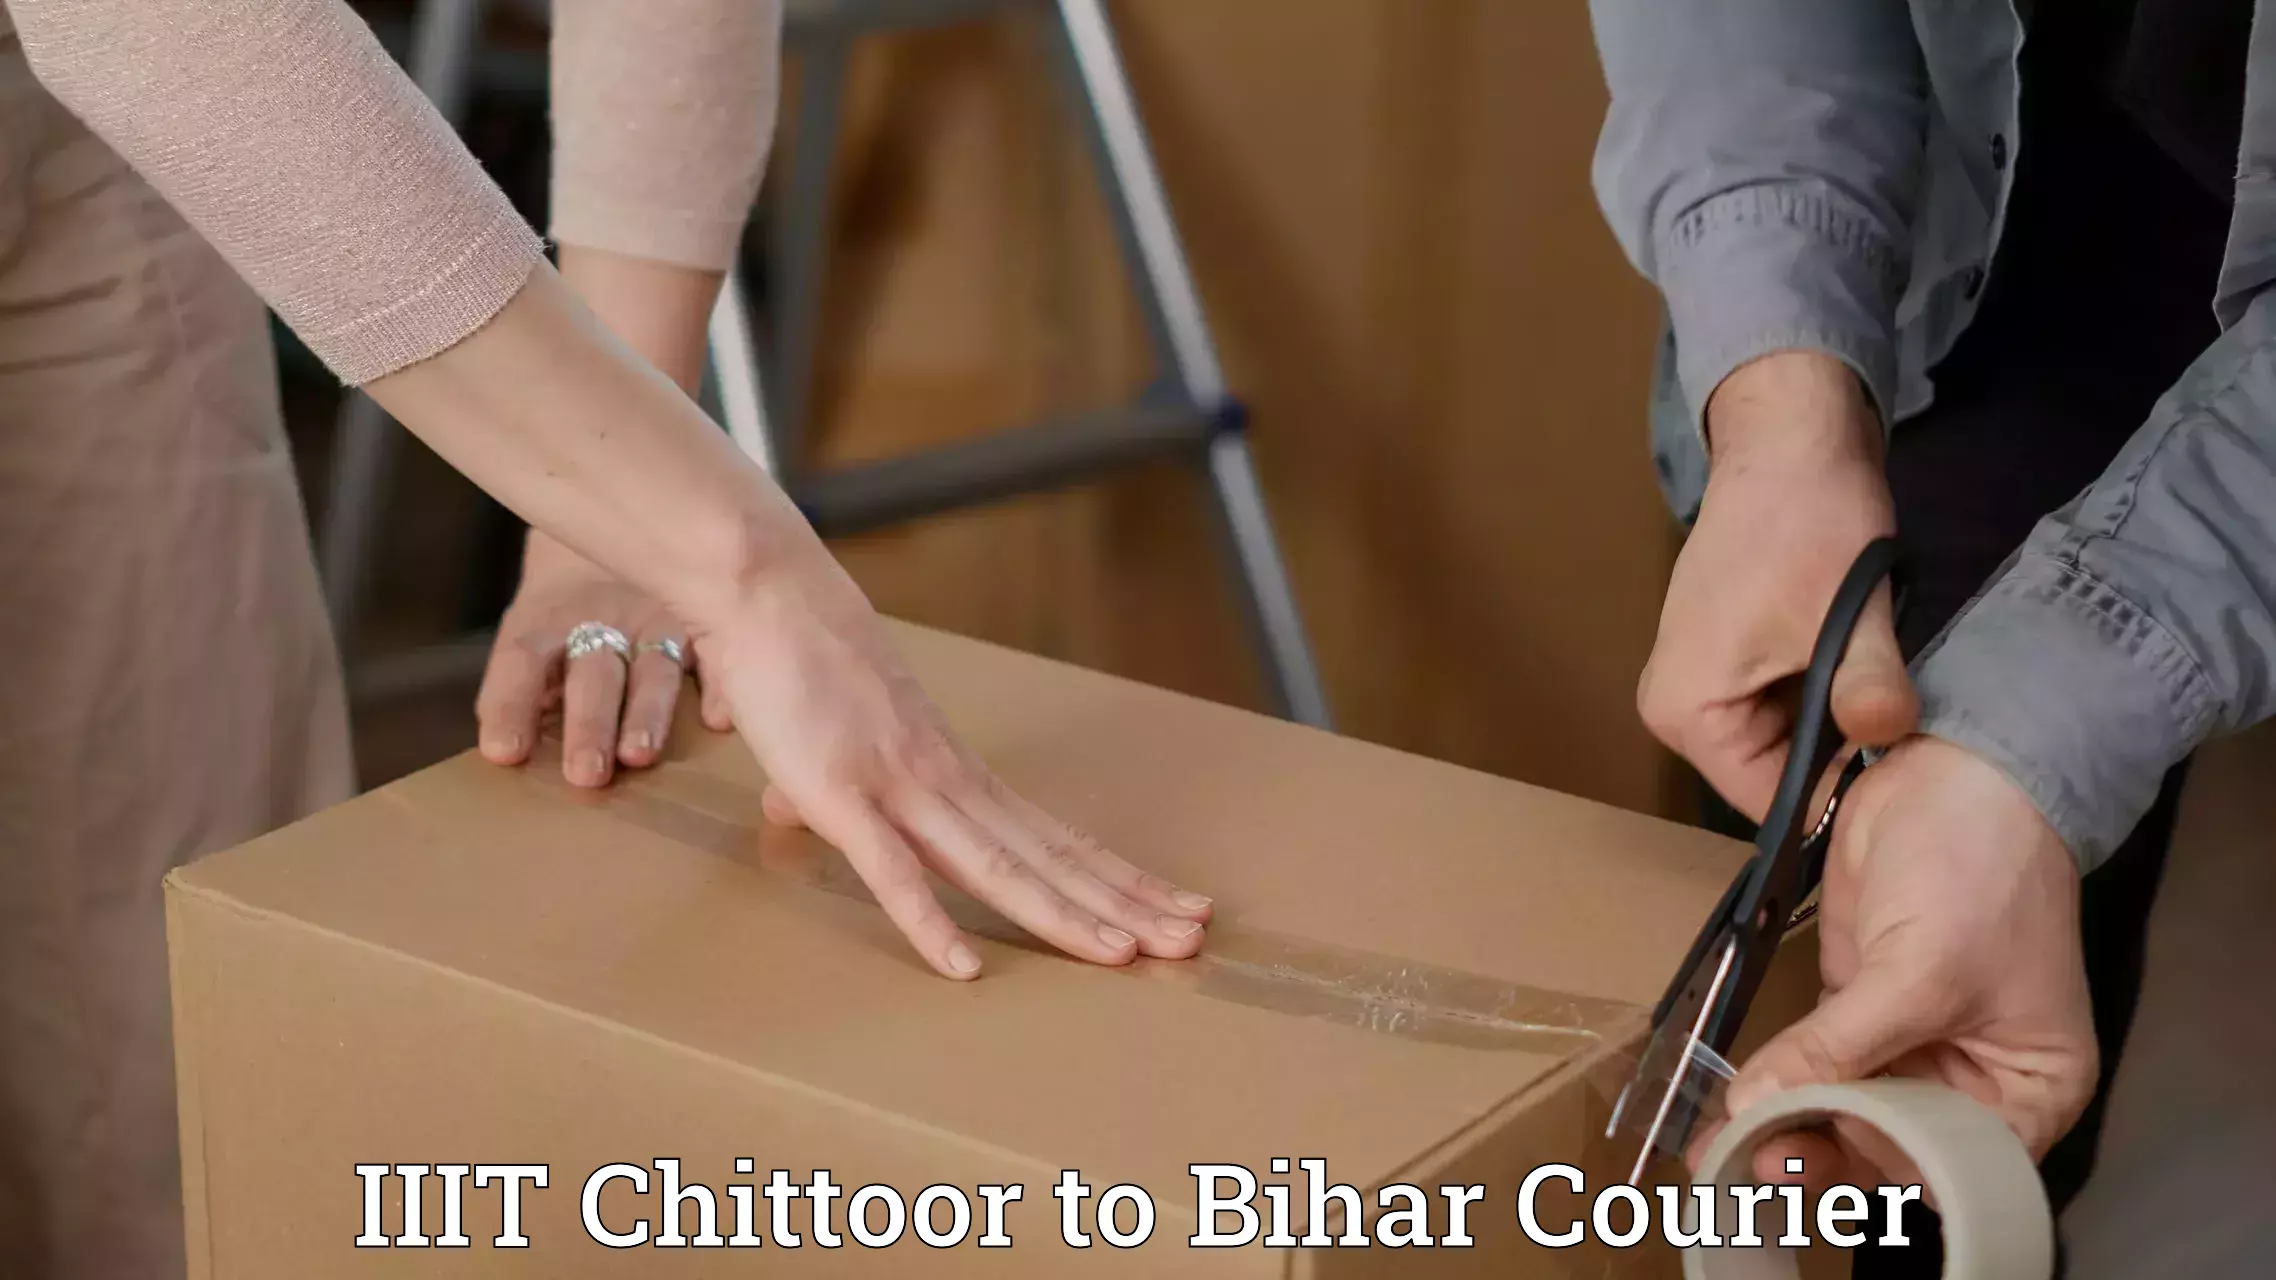 Customer-focused courier IIIT Chittoor to Bihar